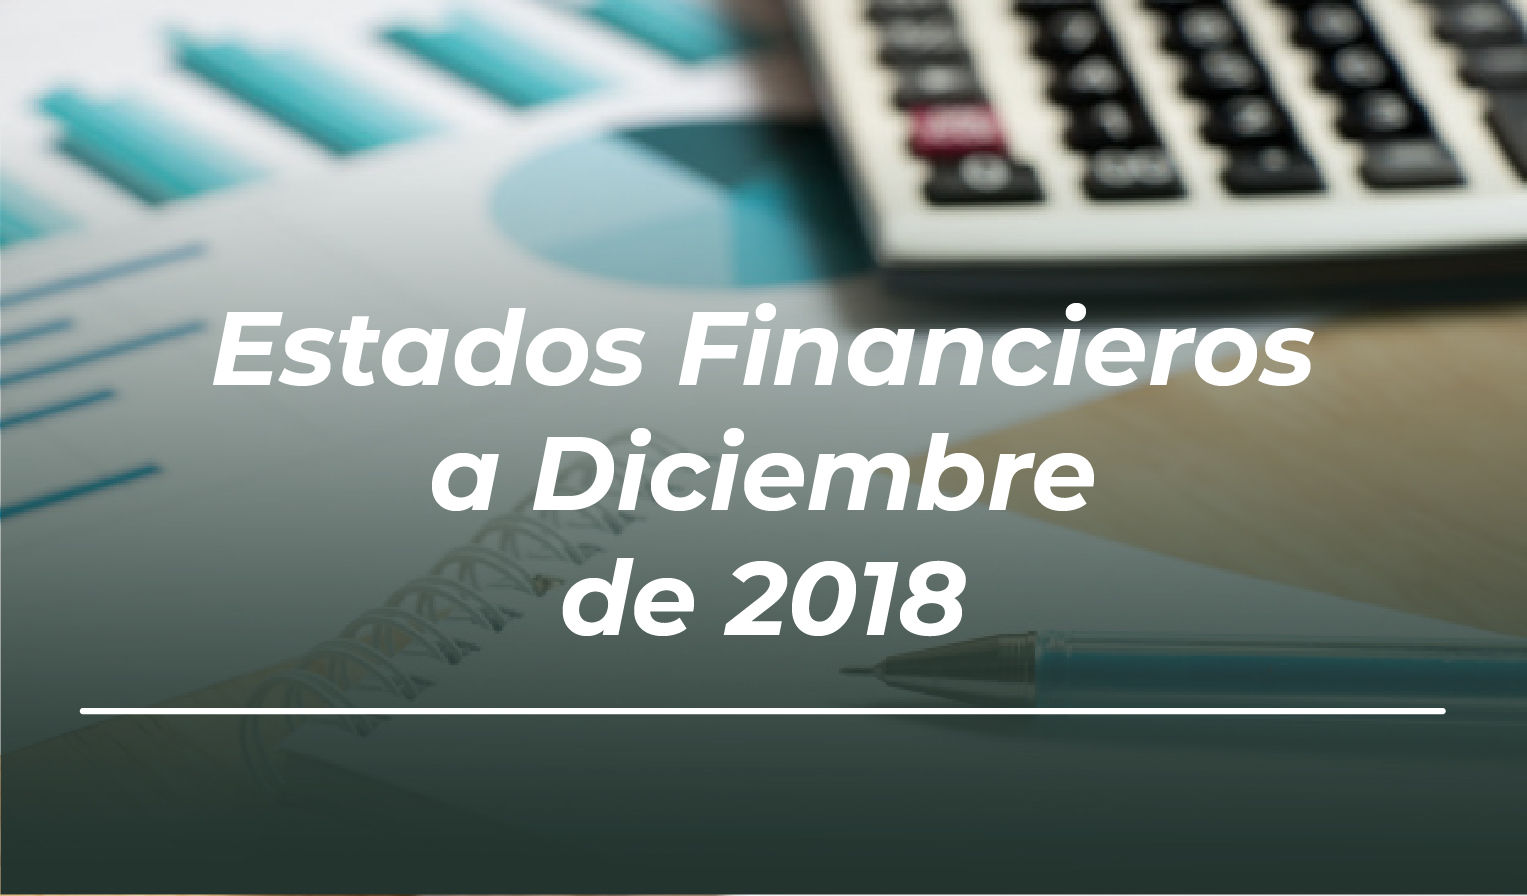 Estados Financieros Diciembre 2018